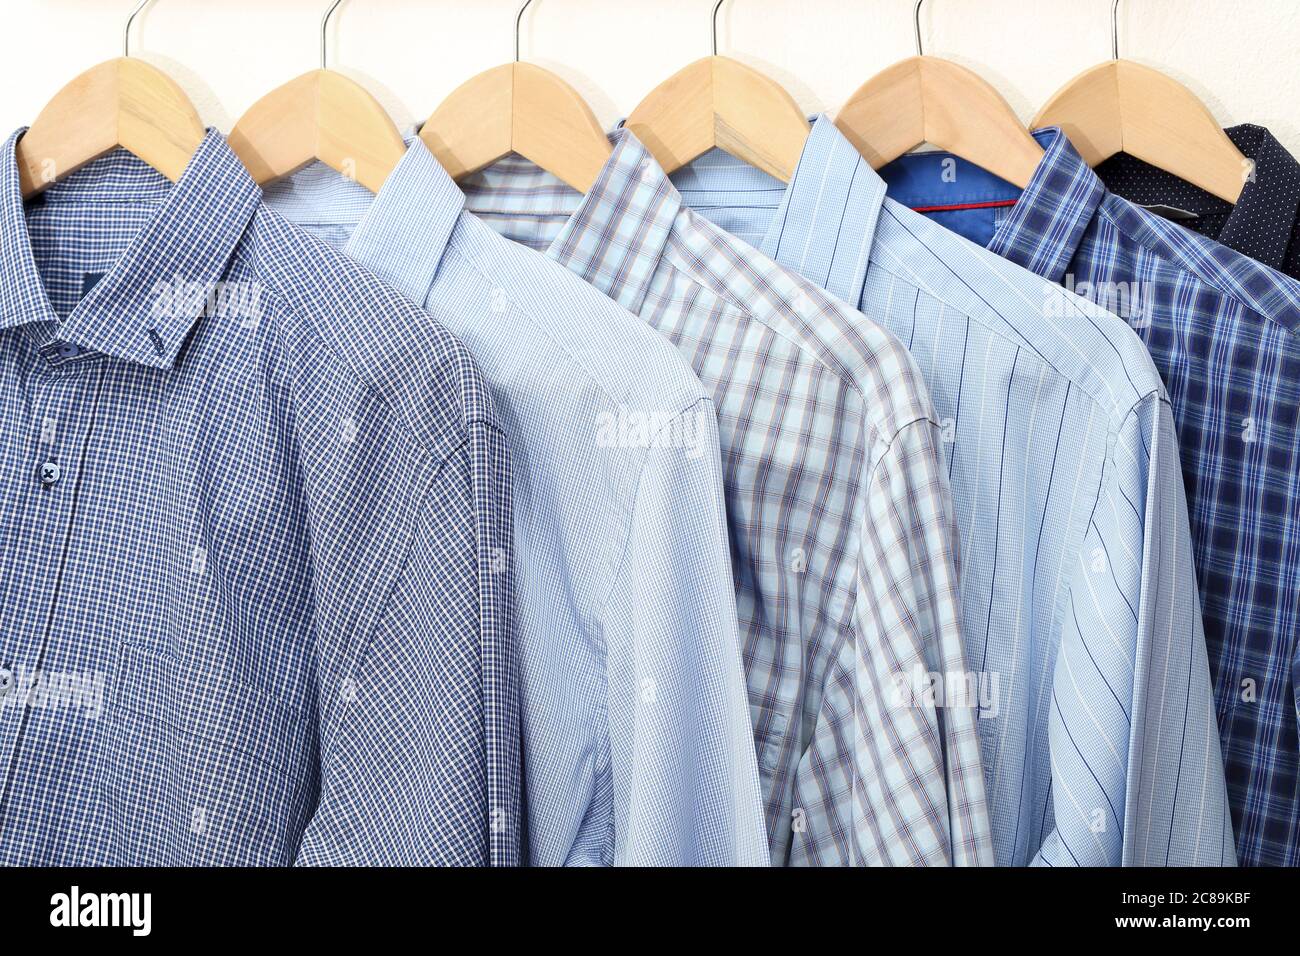 Kollektion von blauen Hemden auf Kleiderbügel, Herrenmode Stockfoto